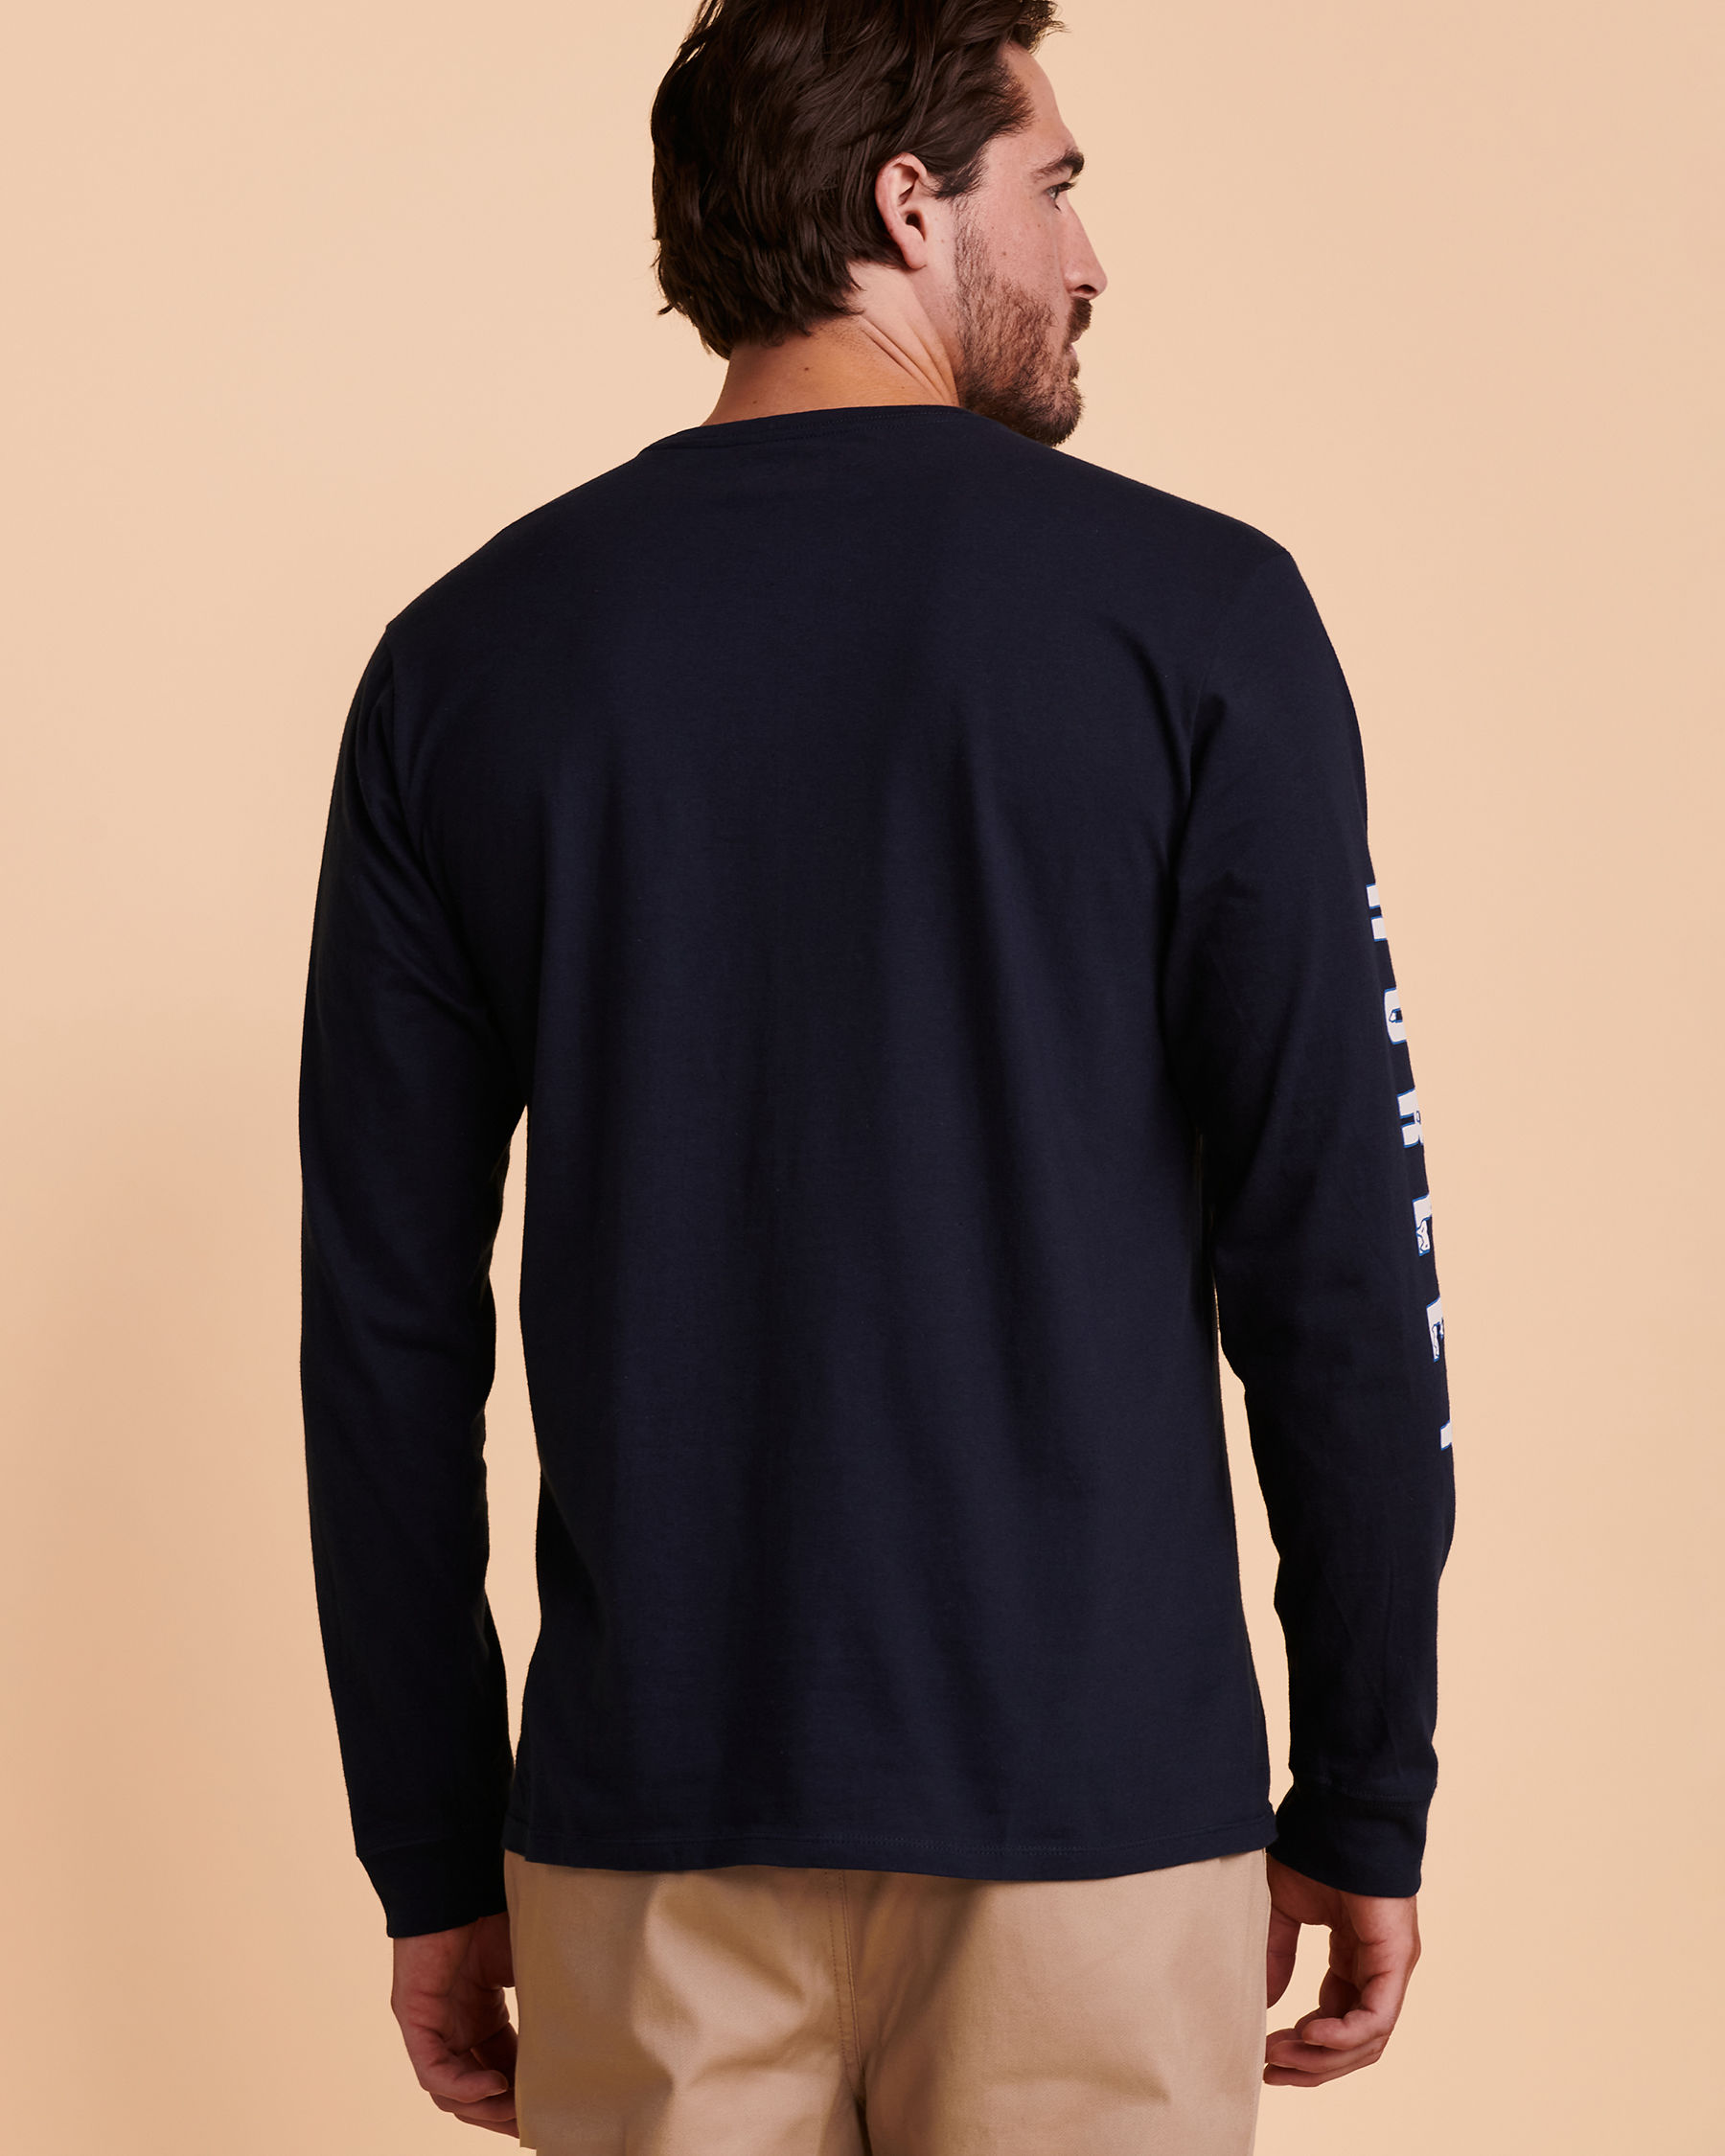 HURLEY Long Sleeve Shirt Blue-black CQ8562 - View2